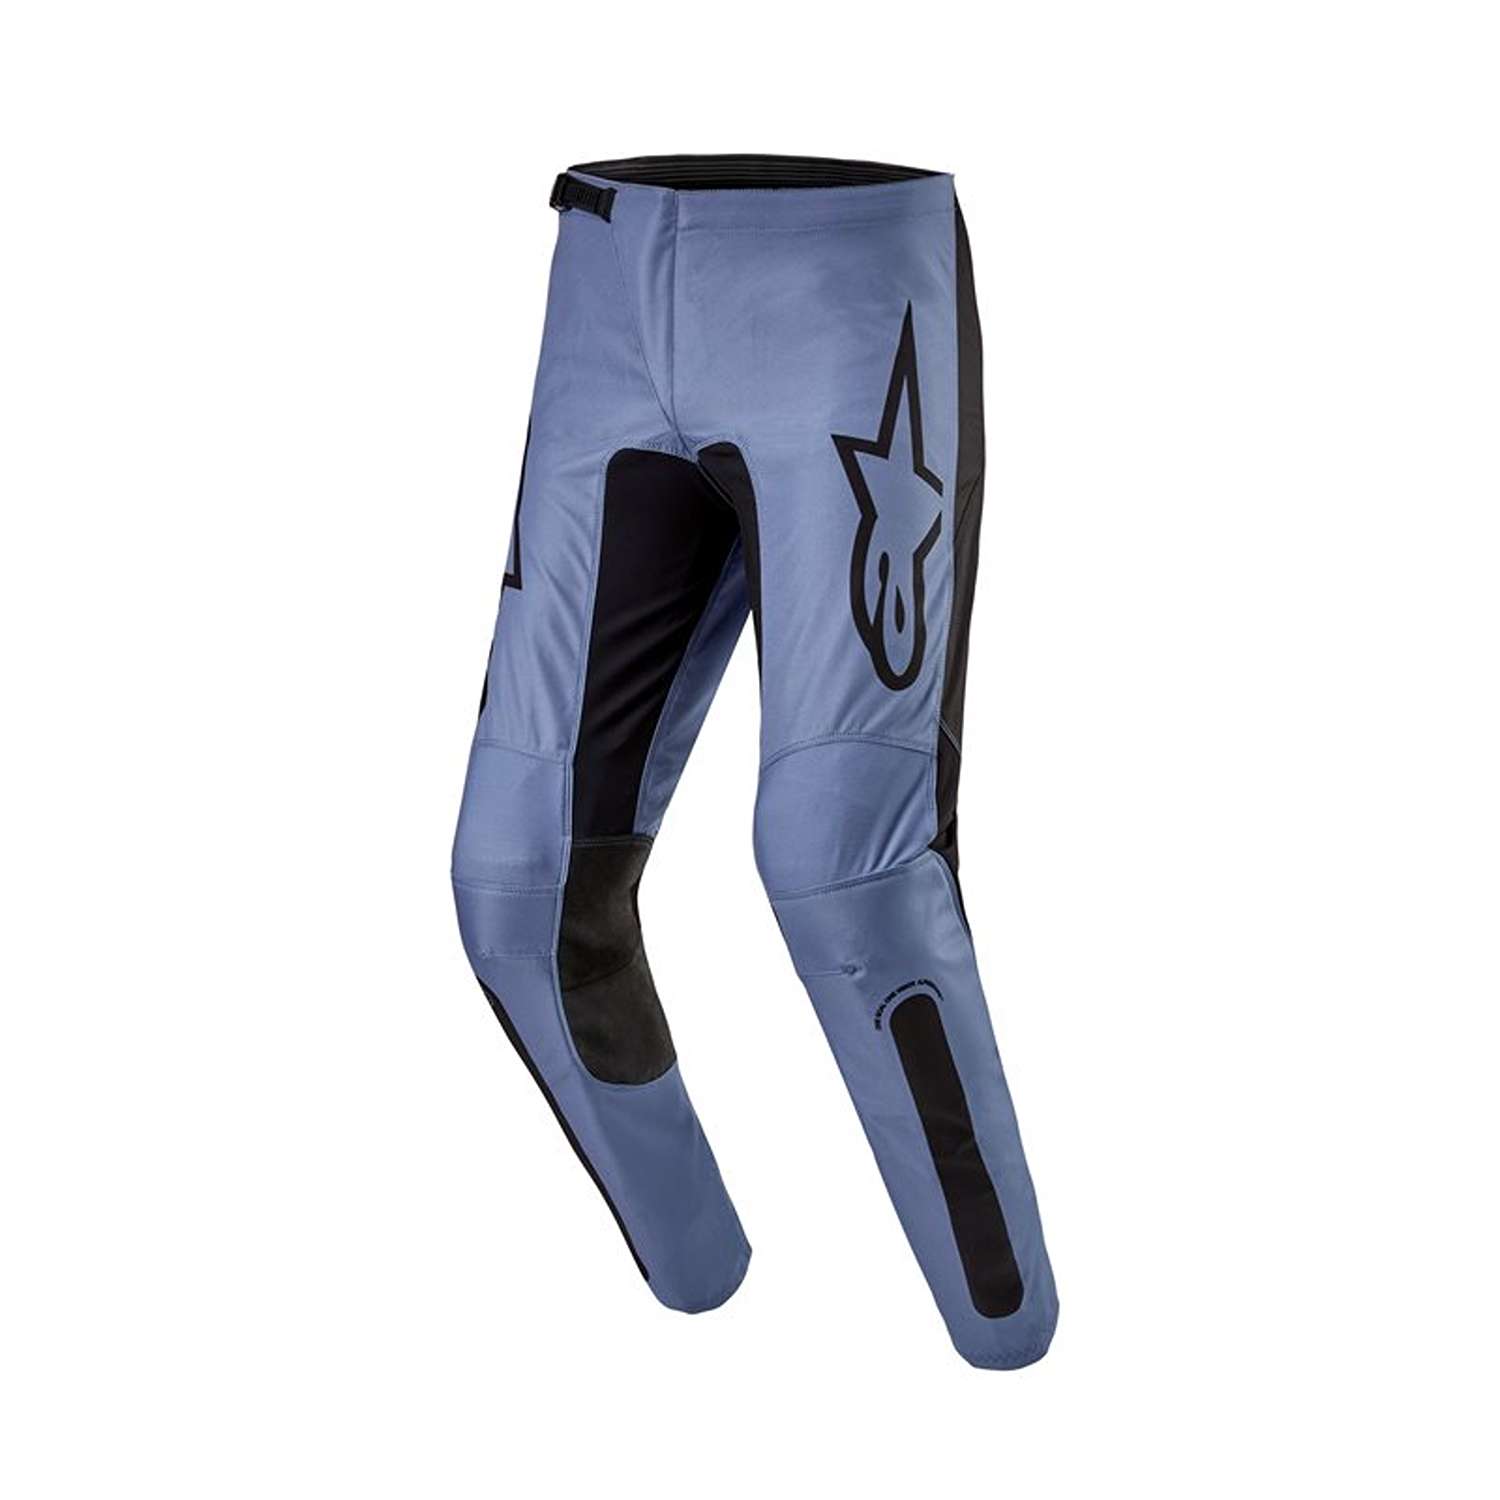 Image of EU Alpinestars Fluid Lurv Pants Light Blue Black Taille 38